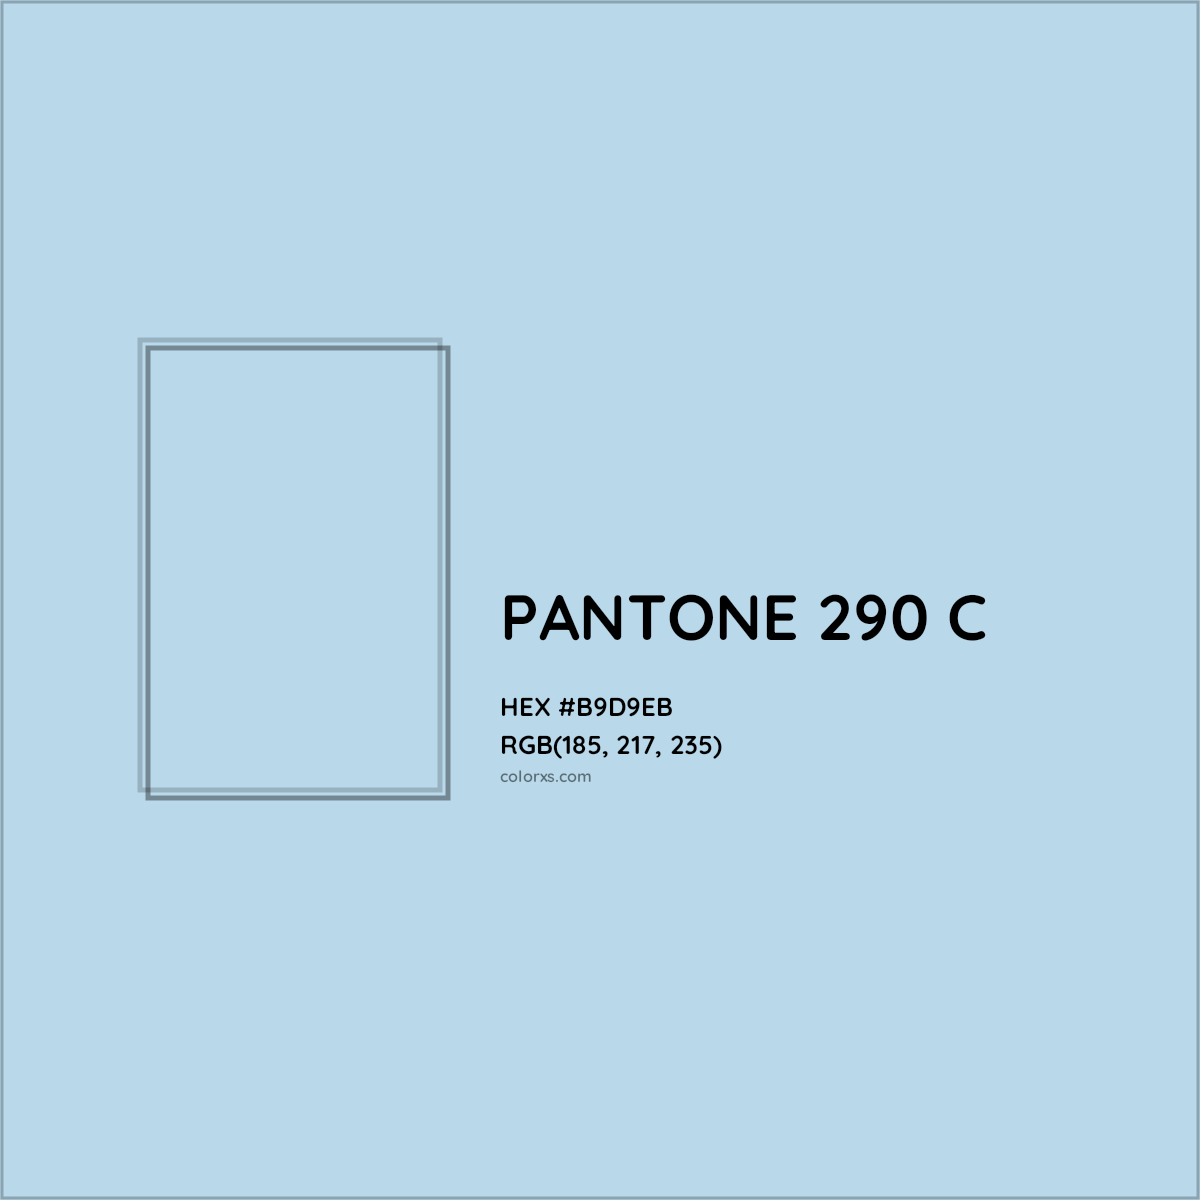 Pantone 290